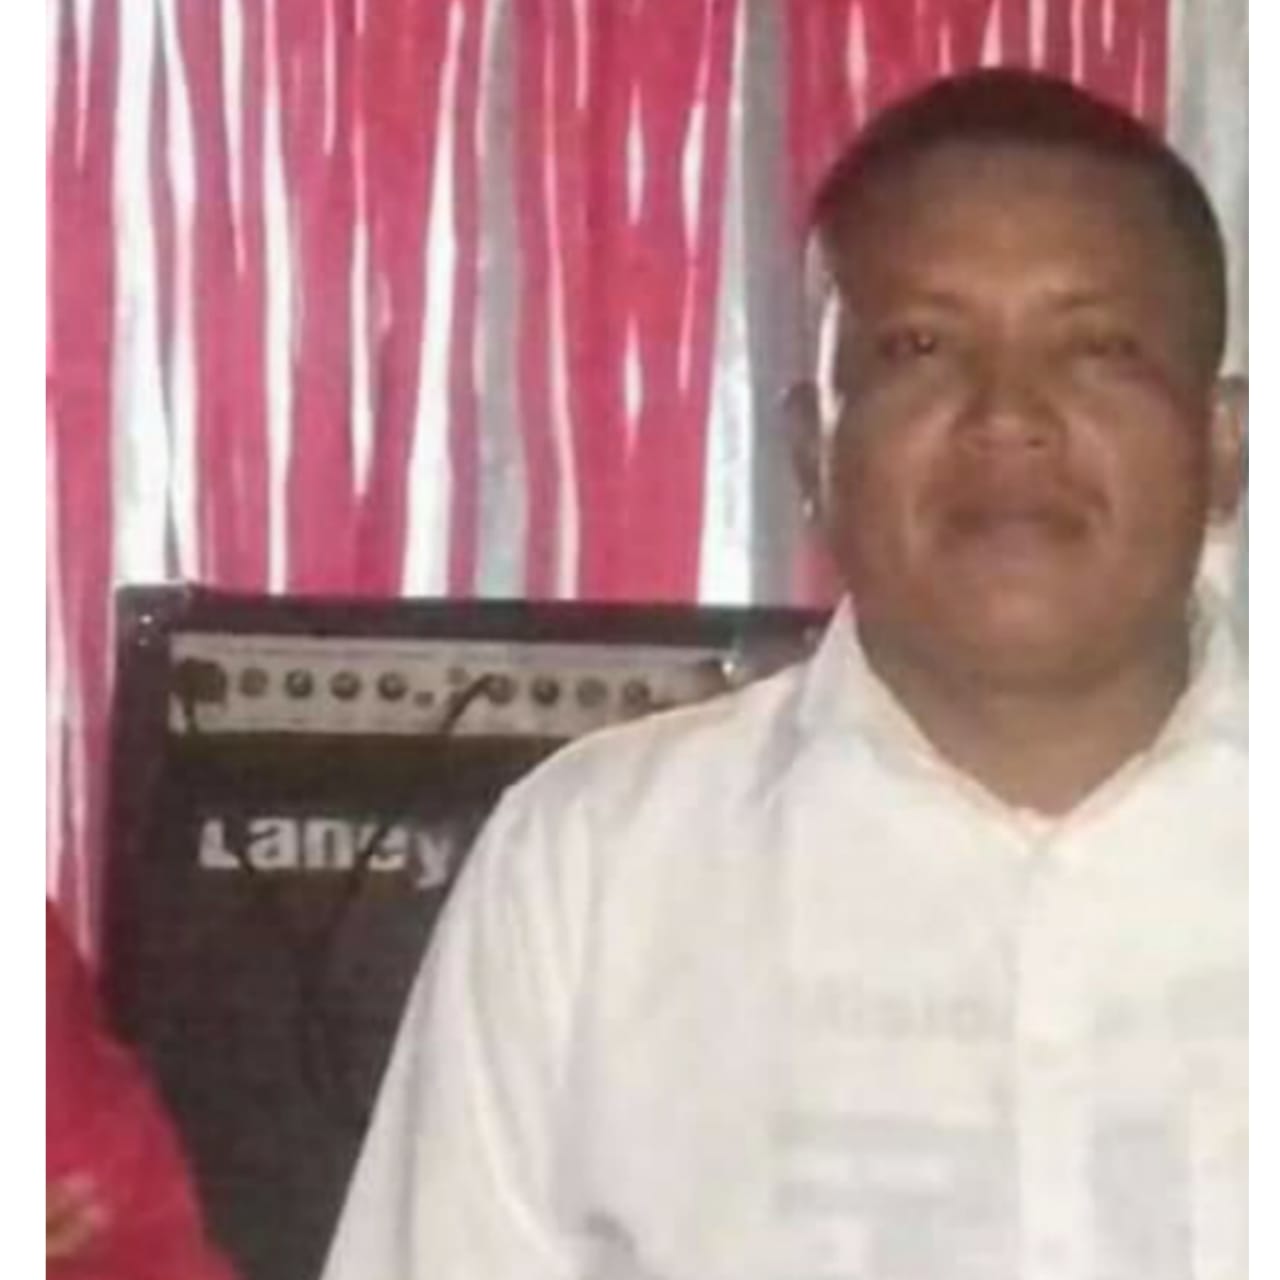 Pastor abandona iglesia y desaparece con adolescente de 15 años Managua. Radio La Primerísima 